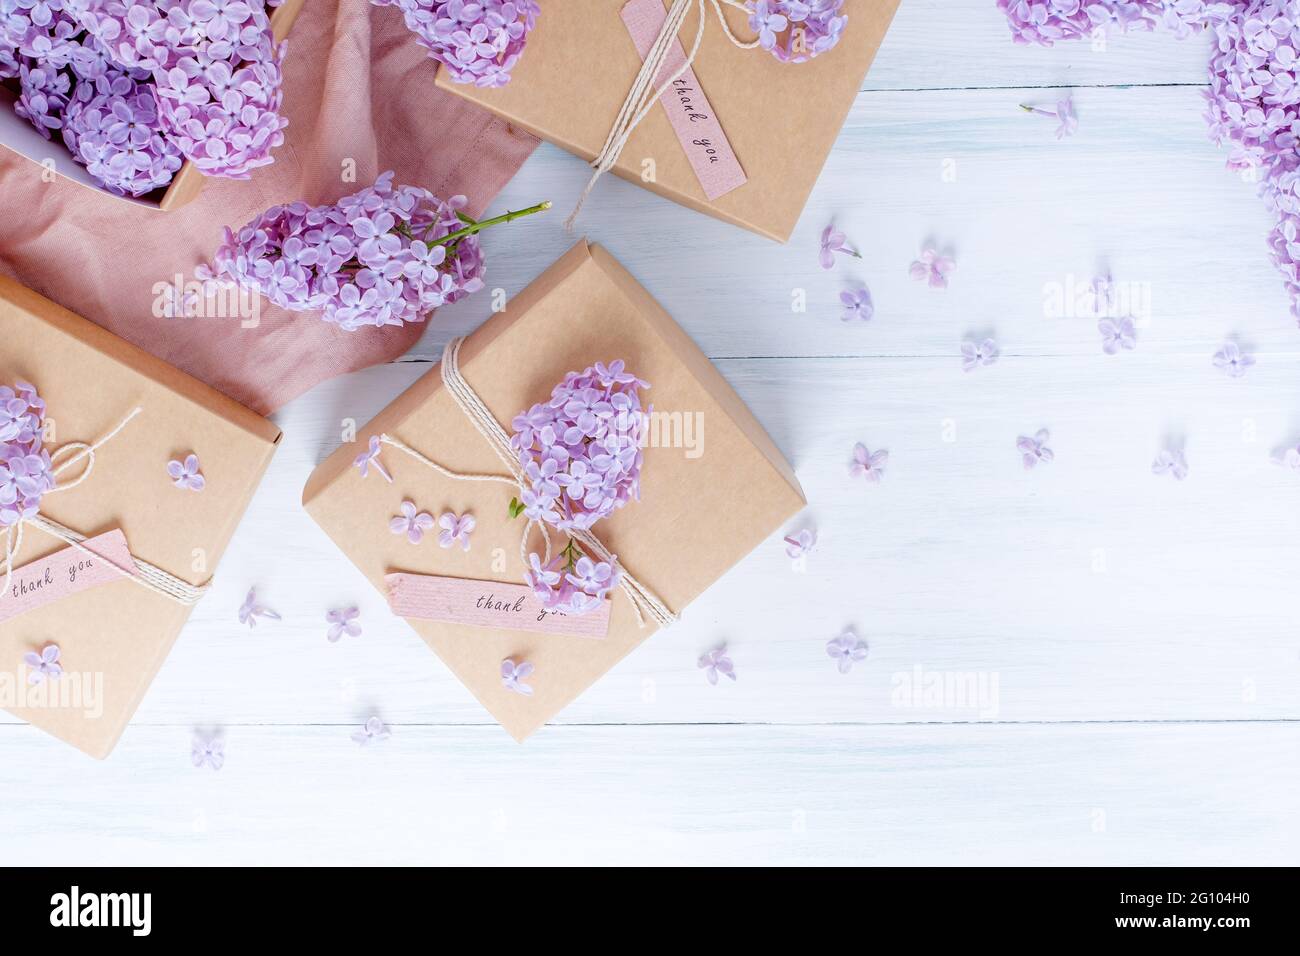 Boîte cadeau décorée de fleurs lilas. Emballage, zéro déchet, sans plastique, concept écologique. Photo de haute qualité Banque D'Images